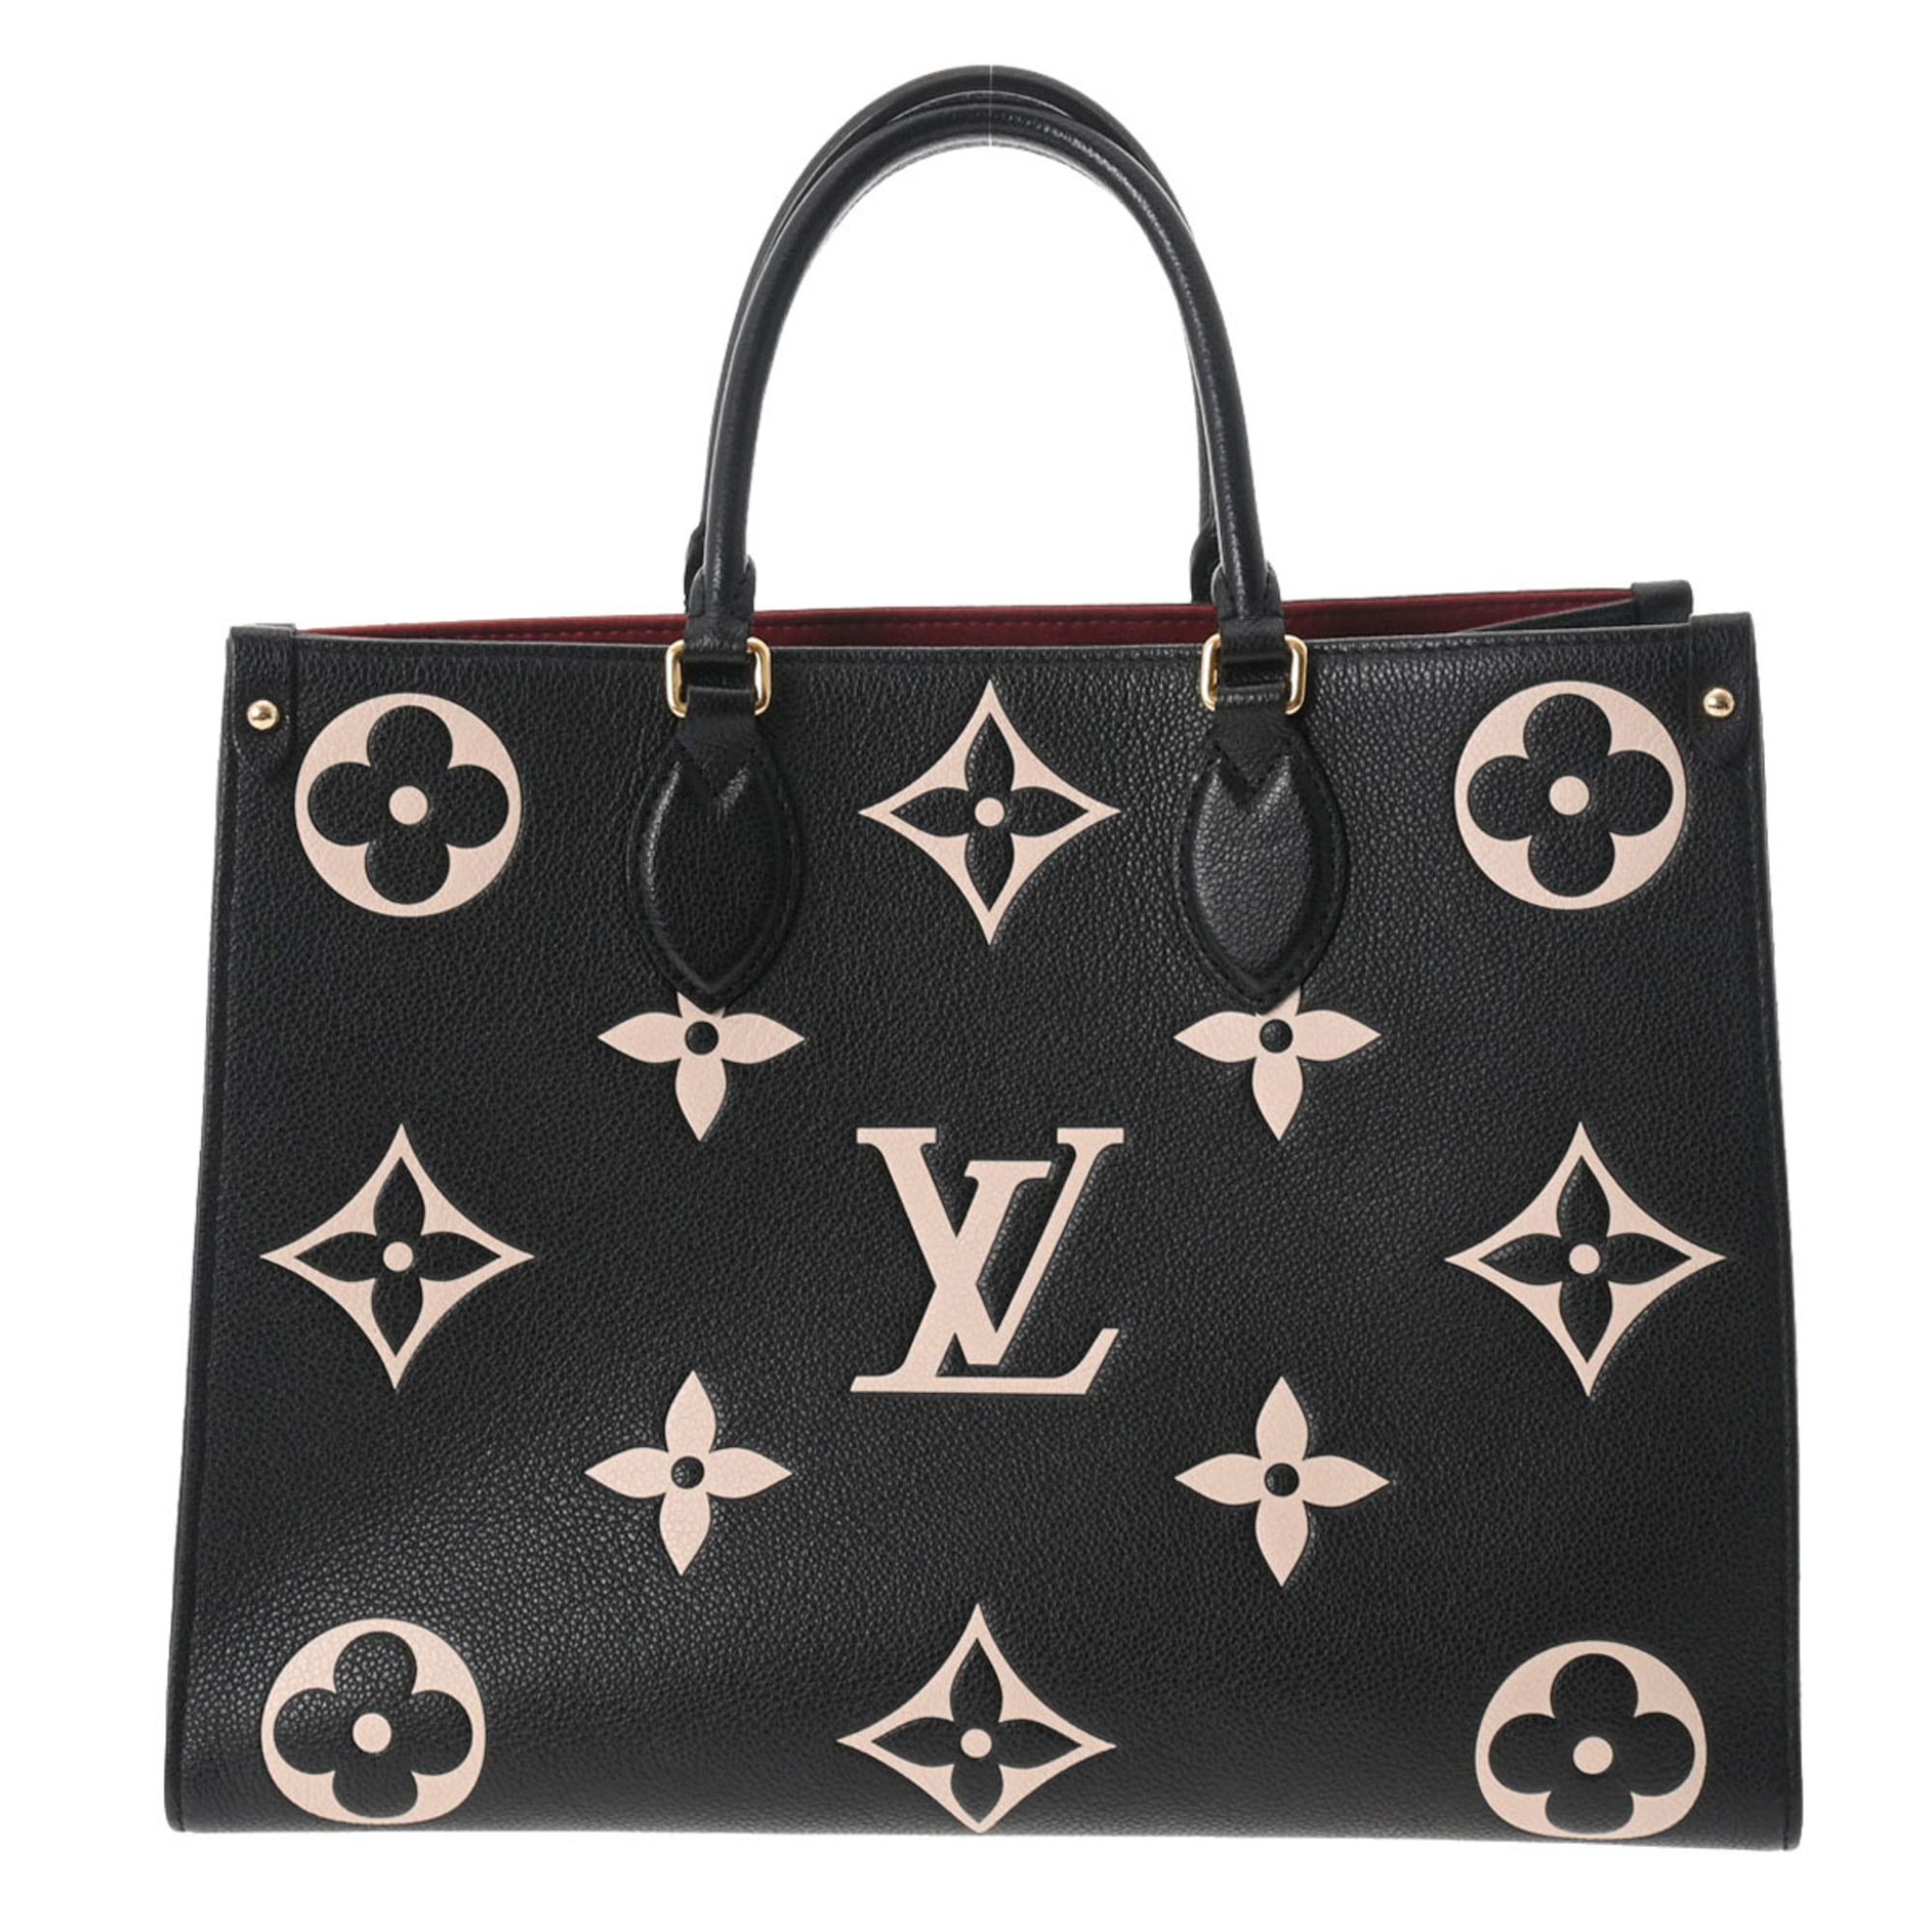 Grand Palais Tote Bag Monogram Empreinte Leather - Handbags M45833